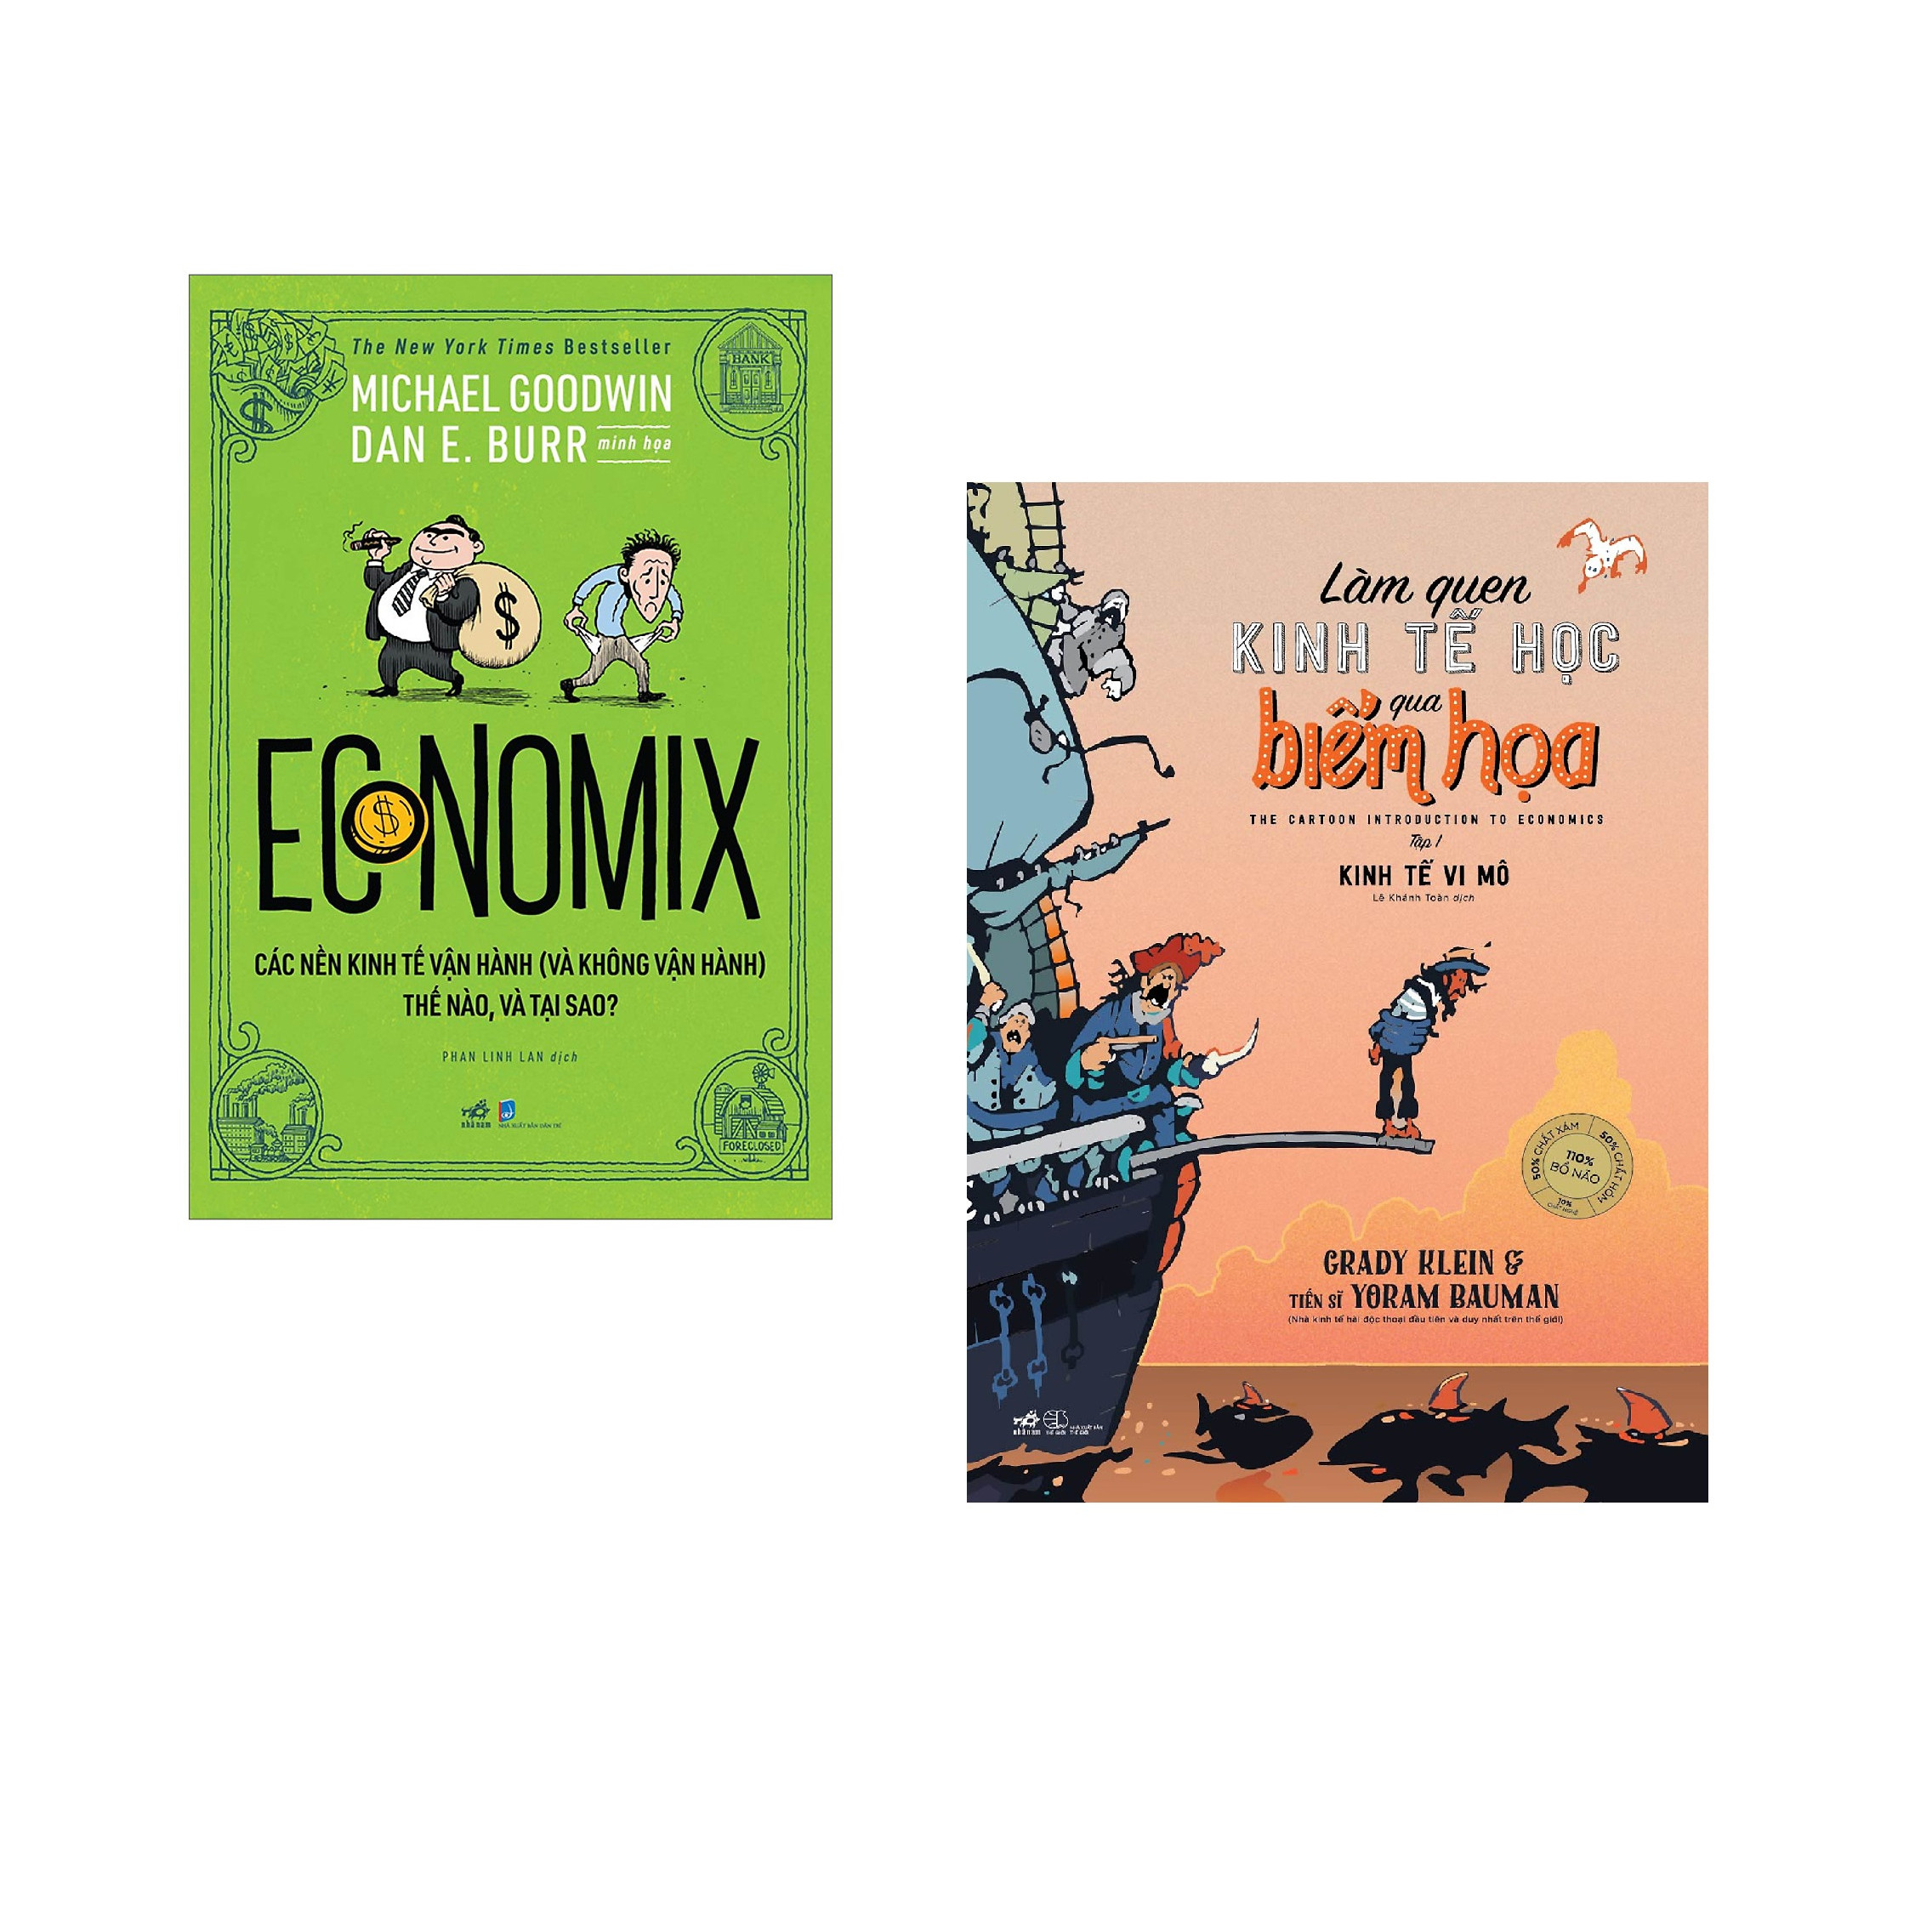 Combo 2 cuốn sách: Economix  + Làm quen kinh tế học qua biếm họa tập 1 (kinh tế vĩ mô)